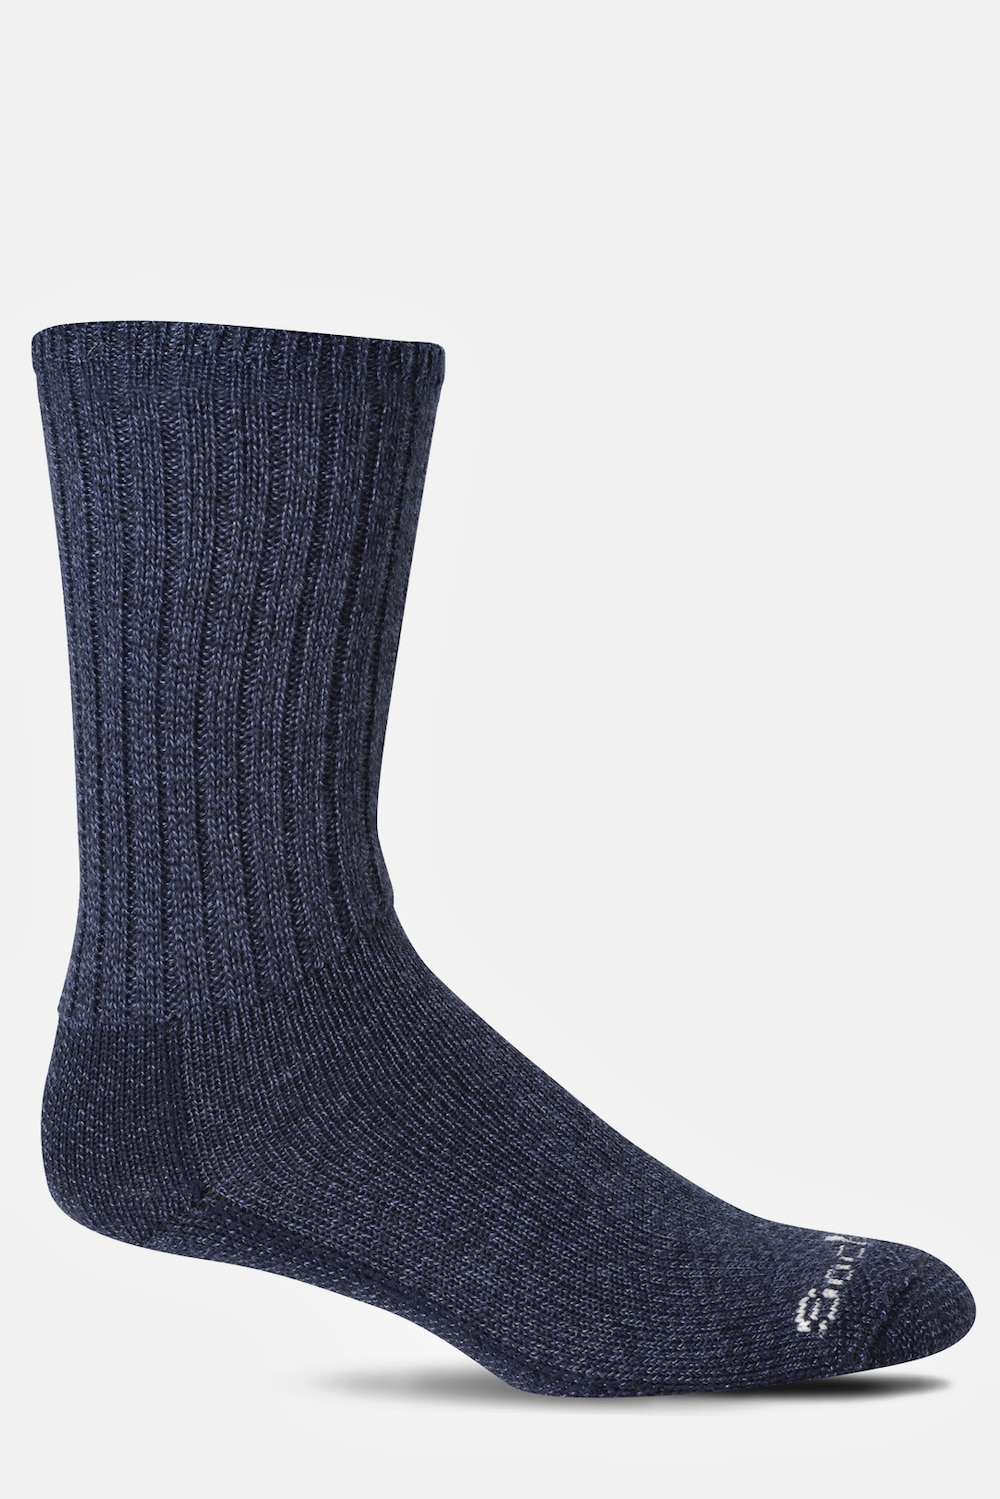 Socken, Große Größen, Herren, blau, Größe: 39-42, Wolle/Viskose/Synthetische Fasern, JP1880 product